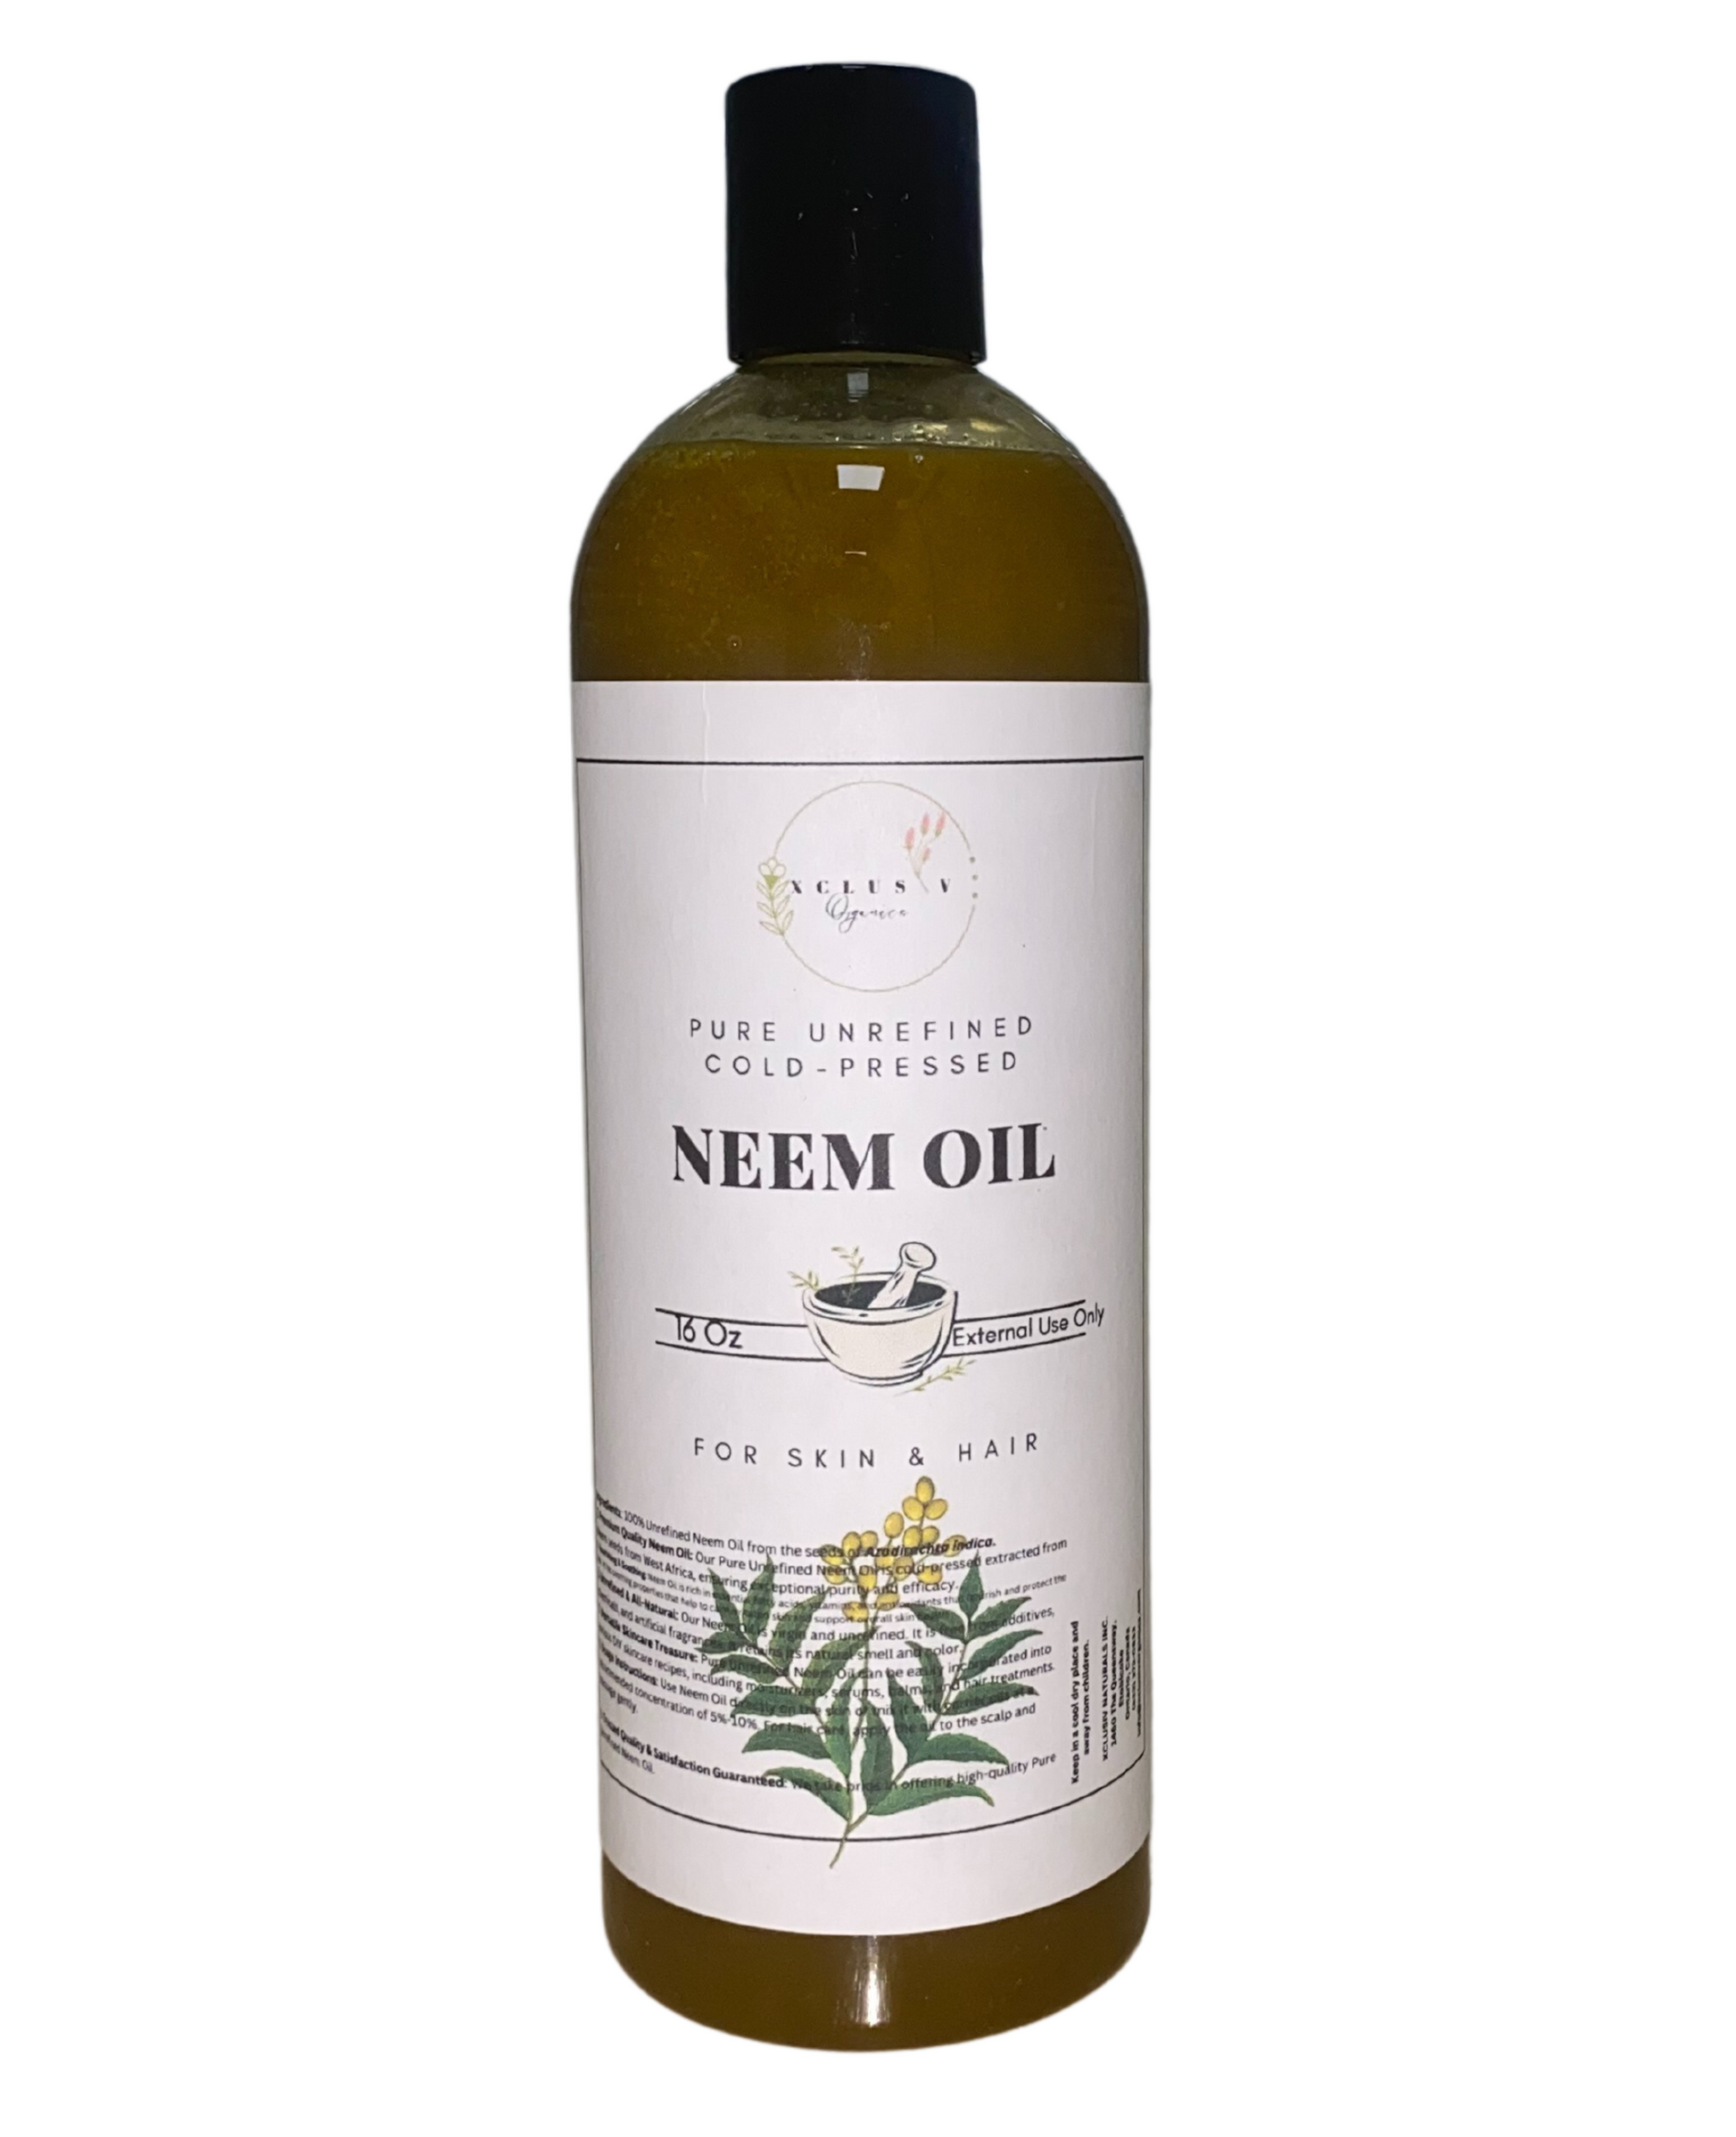 Neem Oil in a 16Oz Bottle